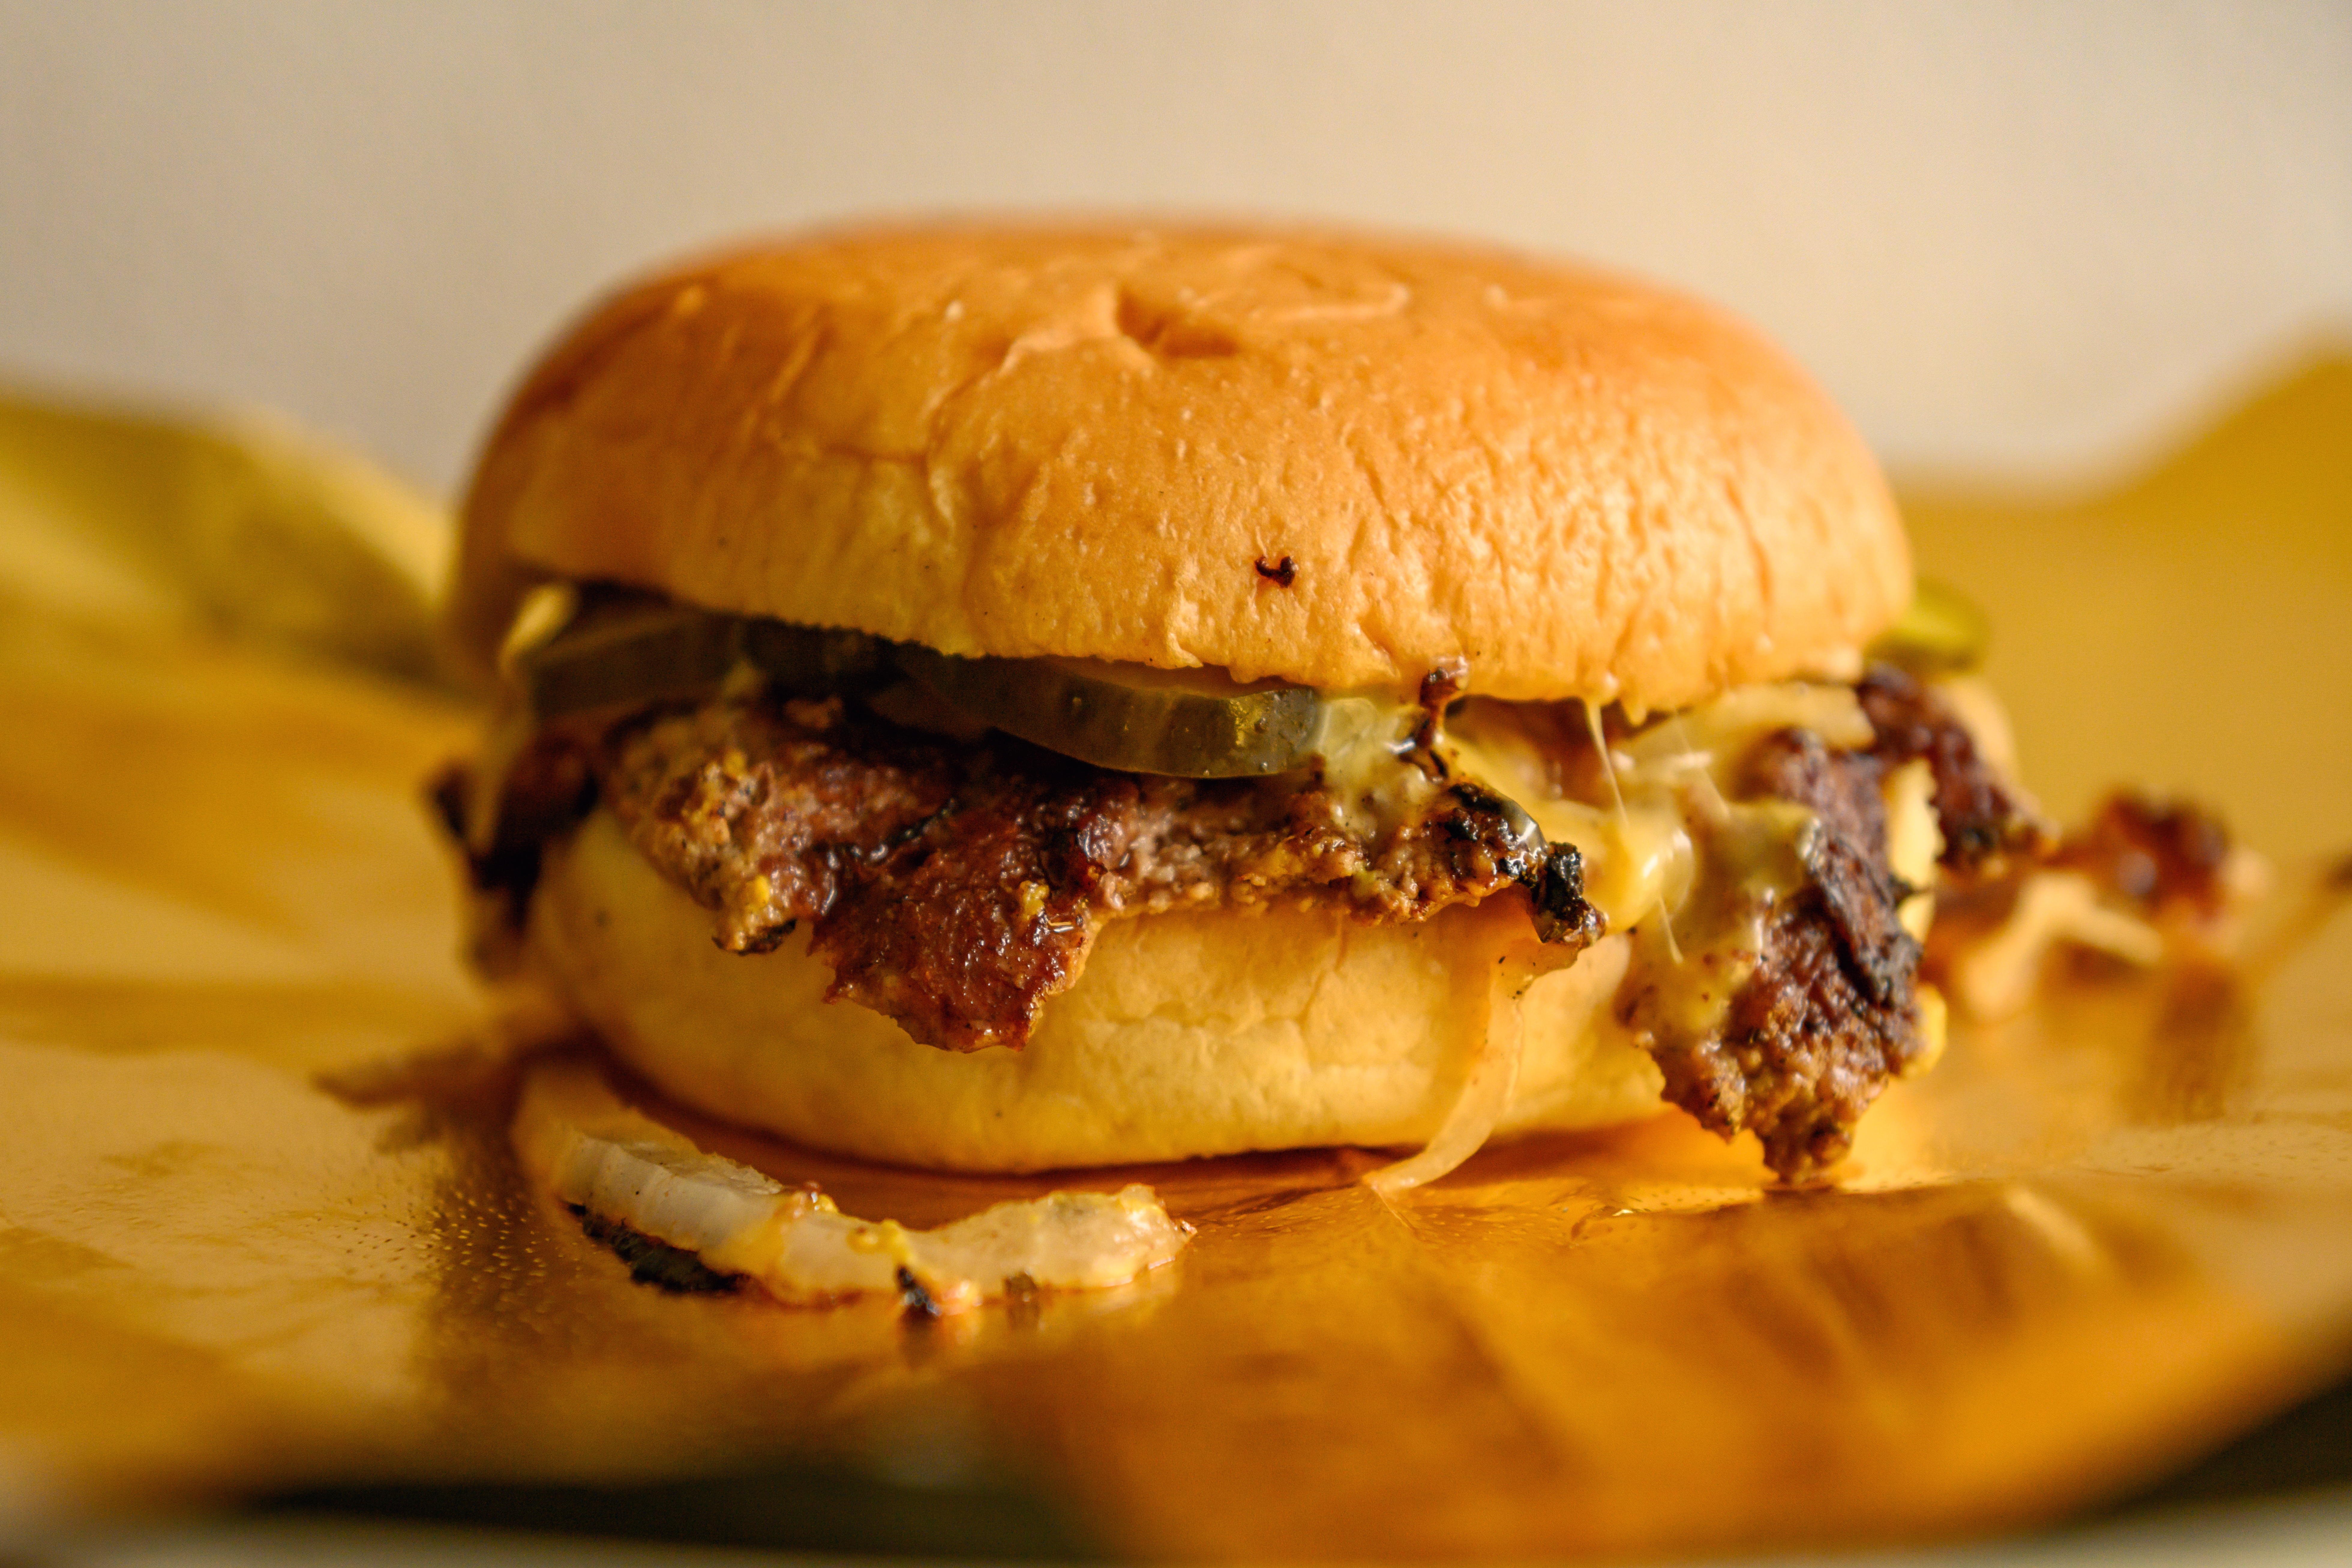 A close up of a Gold Standard burger